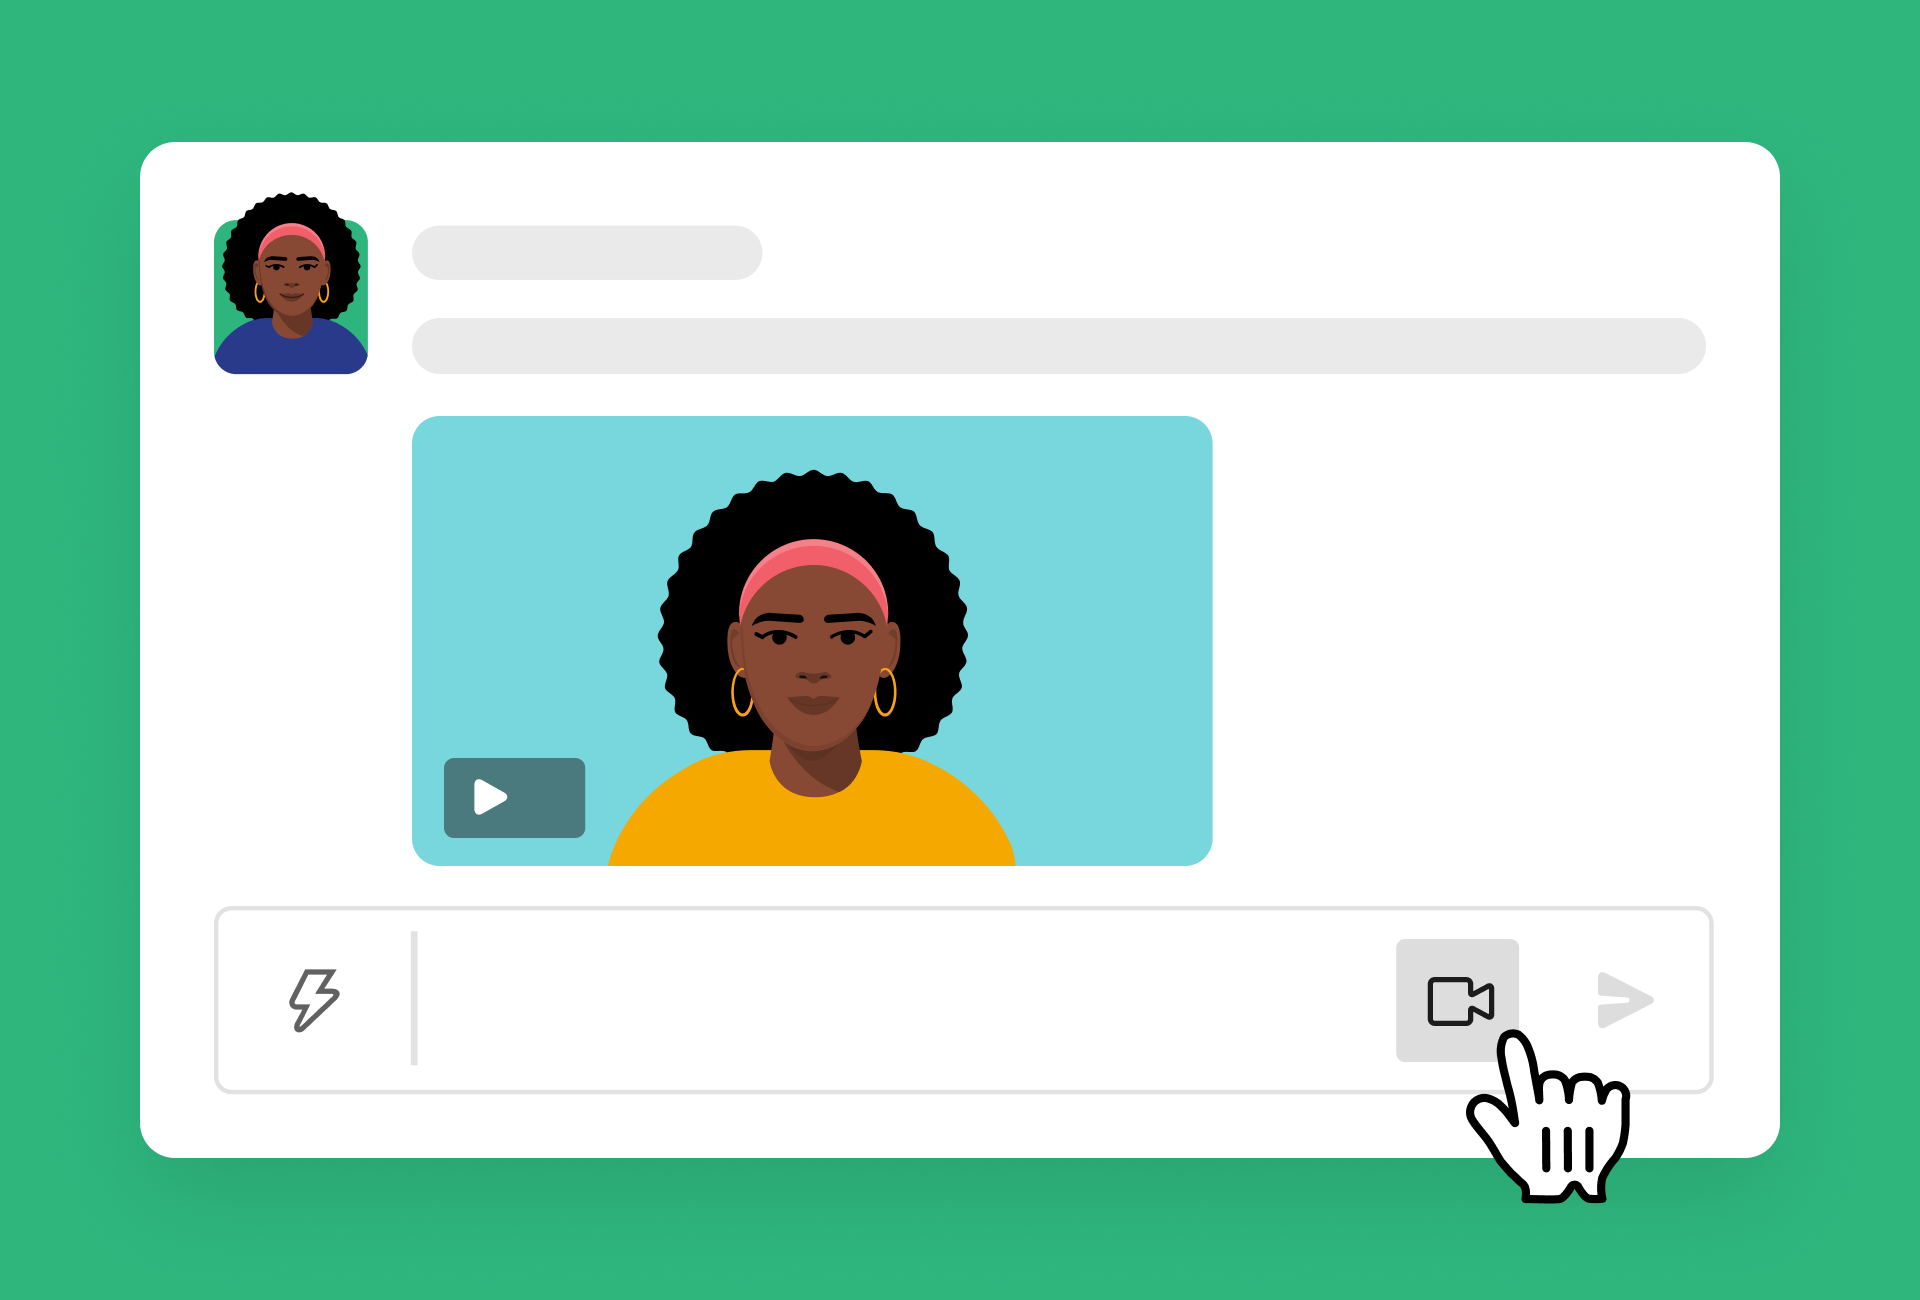 Aufgenommene Videonachricht, die in einem Slack-Channel geteilt wurde, und ein Kamerasymbol, mit dem du eine neue Video- und Sprachnachricht aufnehmen kannst